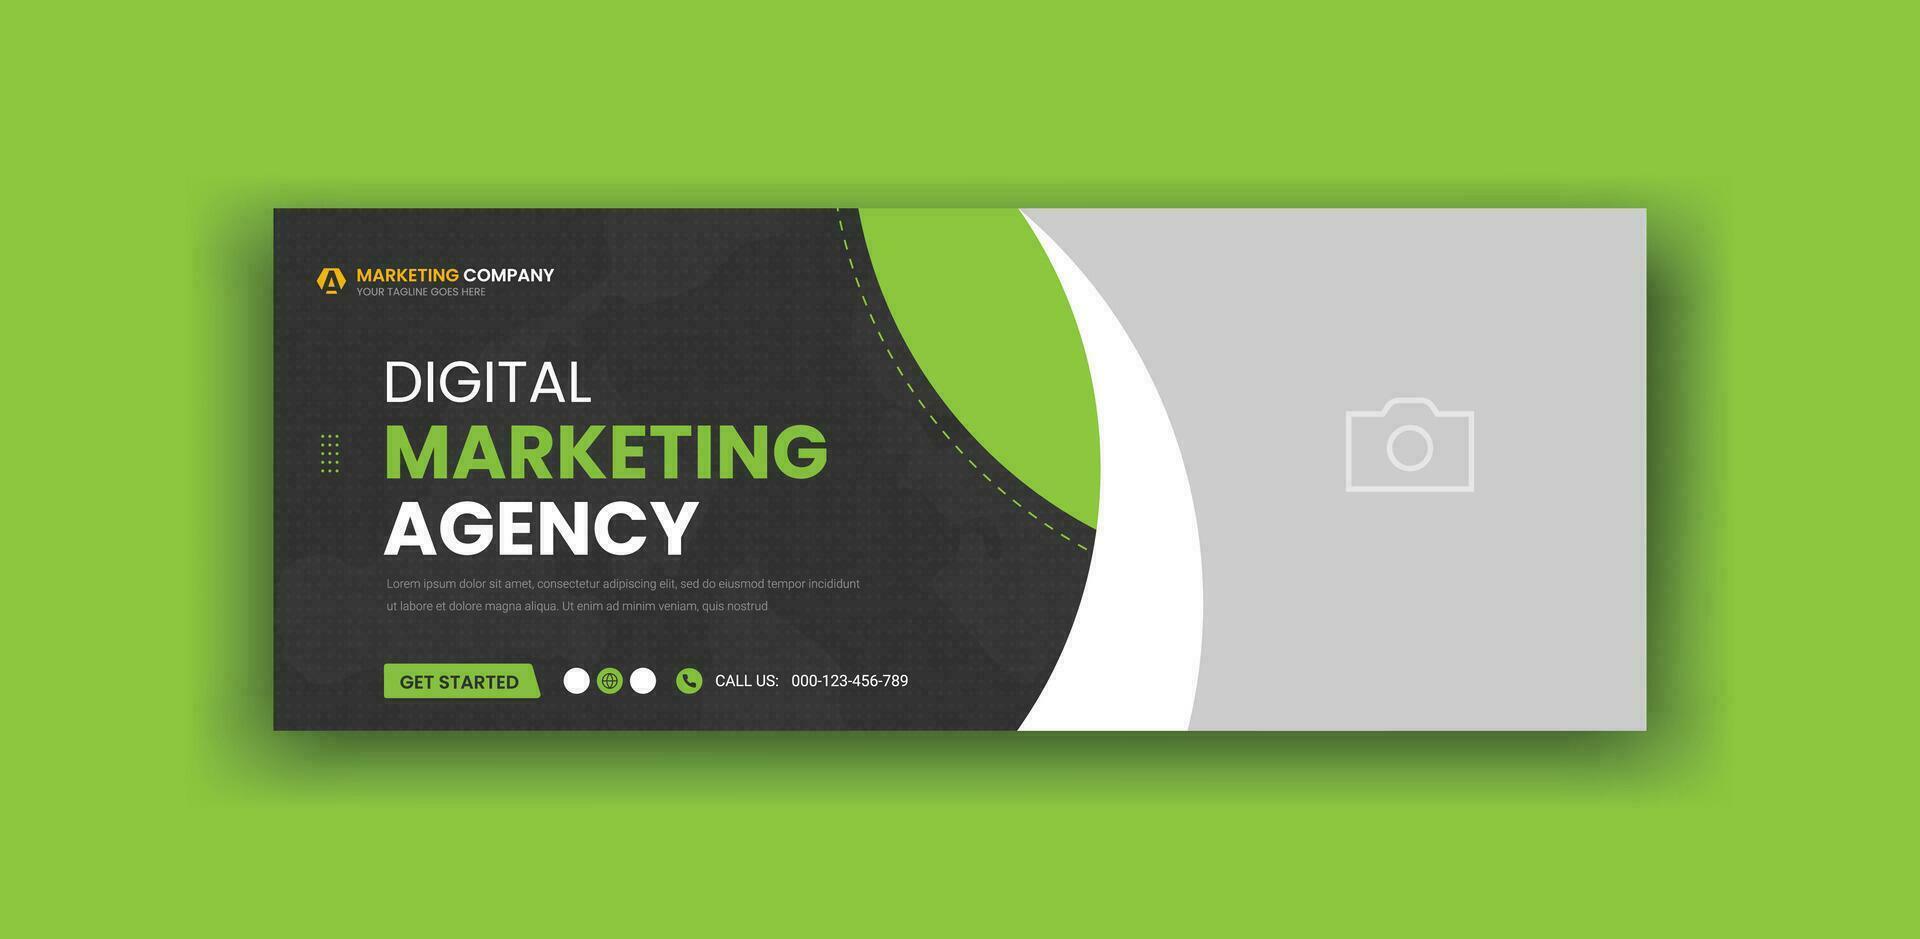 Digital Marketing Agentur Sozial Medien Startseite Banner Vorlage vektor